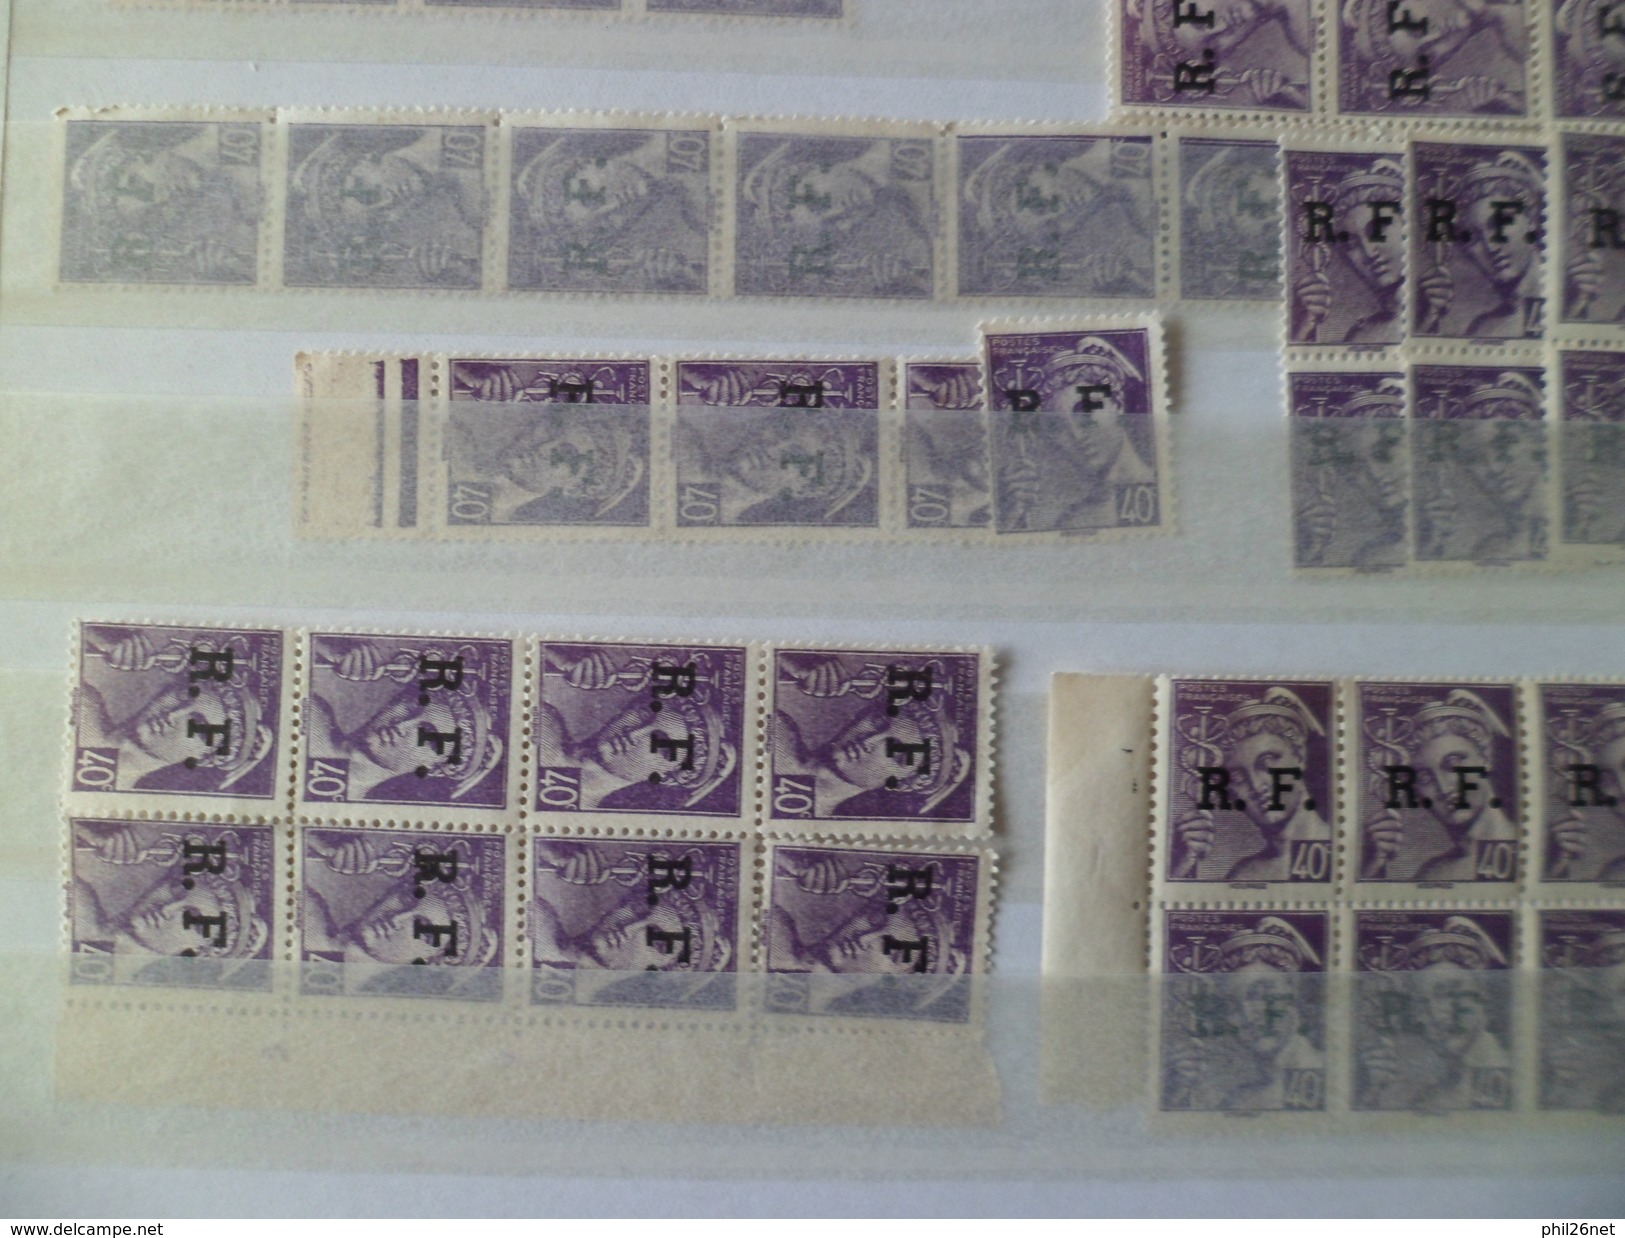 Libération de Lyon lot de  plus de 50 séries du N°1 au N° 15 dont le N° 12 tous les timbres sont Neufs la majorité  * *